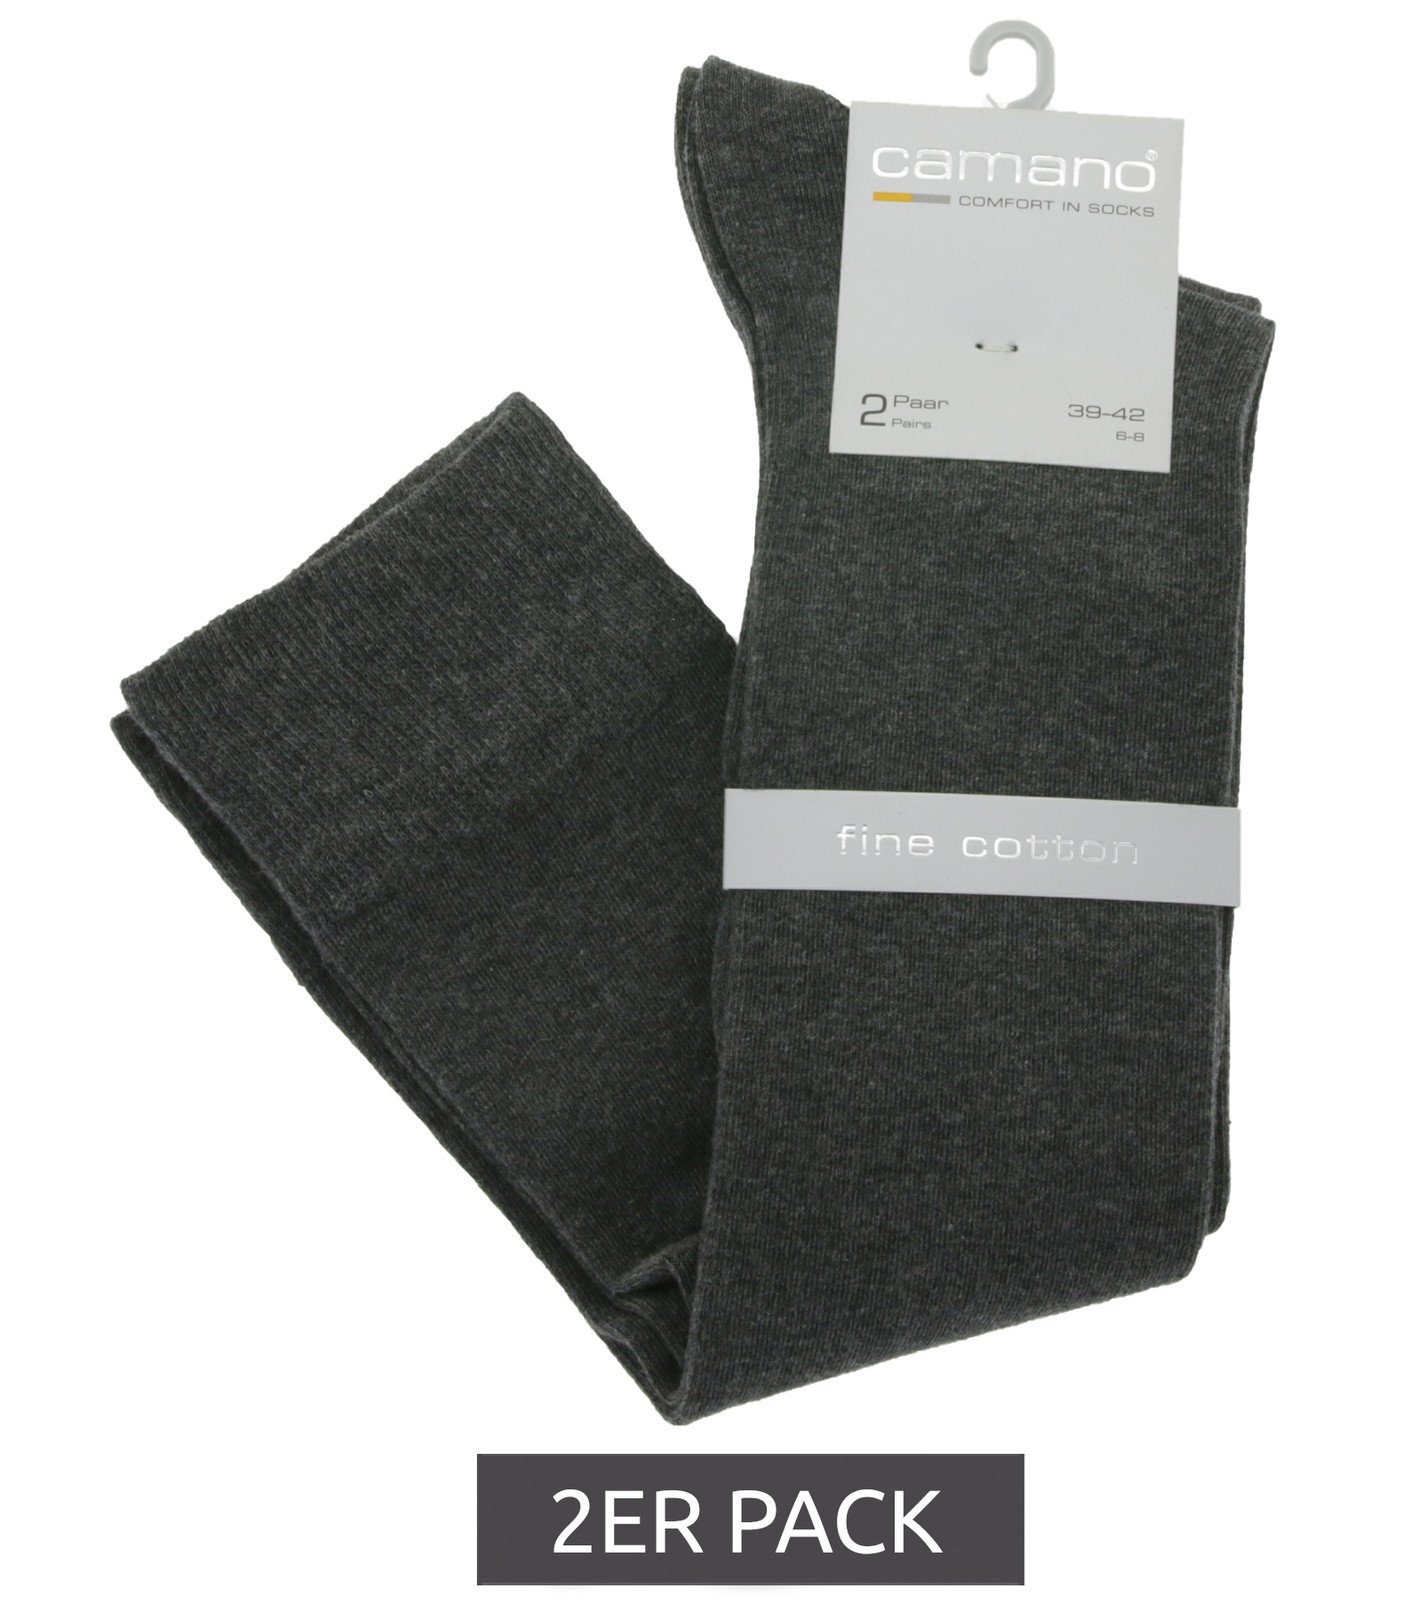 4601 Pack Alltags-Socken Baumwolle Mode Camano aus Anthrazit 2er Basicsocken camano Knie-Strümpfe